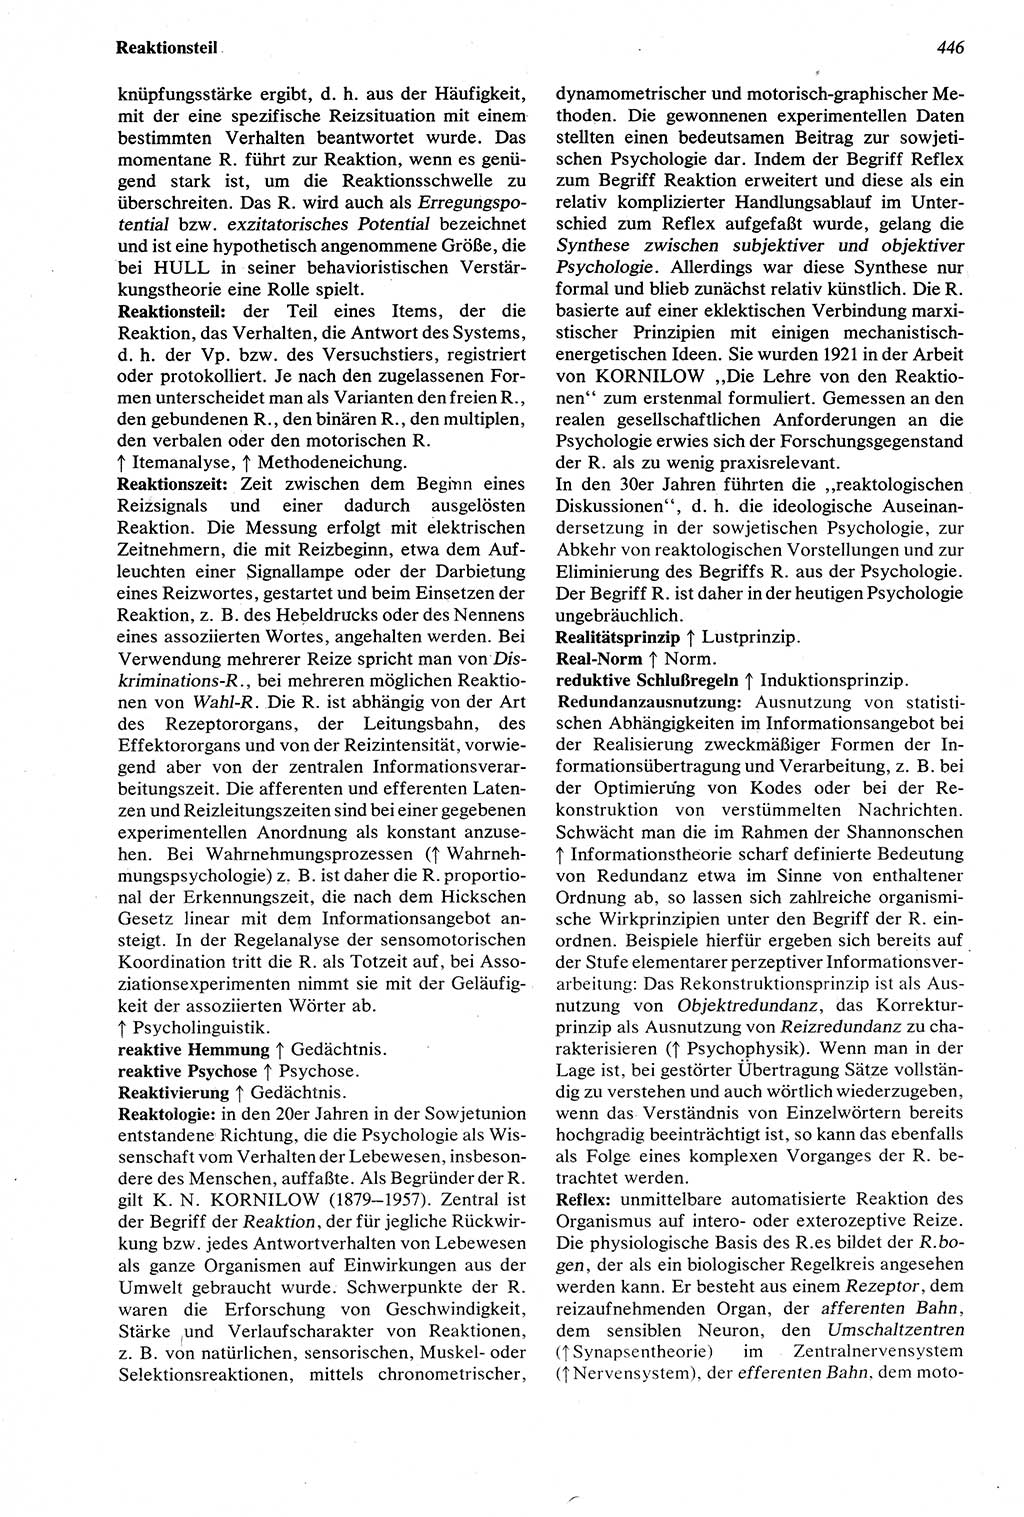 Wörterbuch der Psychologie [Deutsche Demokratische Republik (DDR)] 1976, Seite 446 (Wb. Psych. DDR 1976, S. 446)